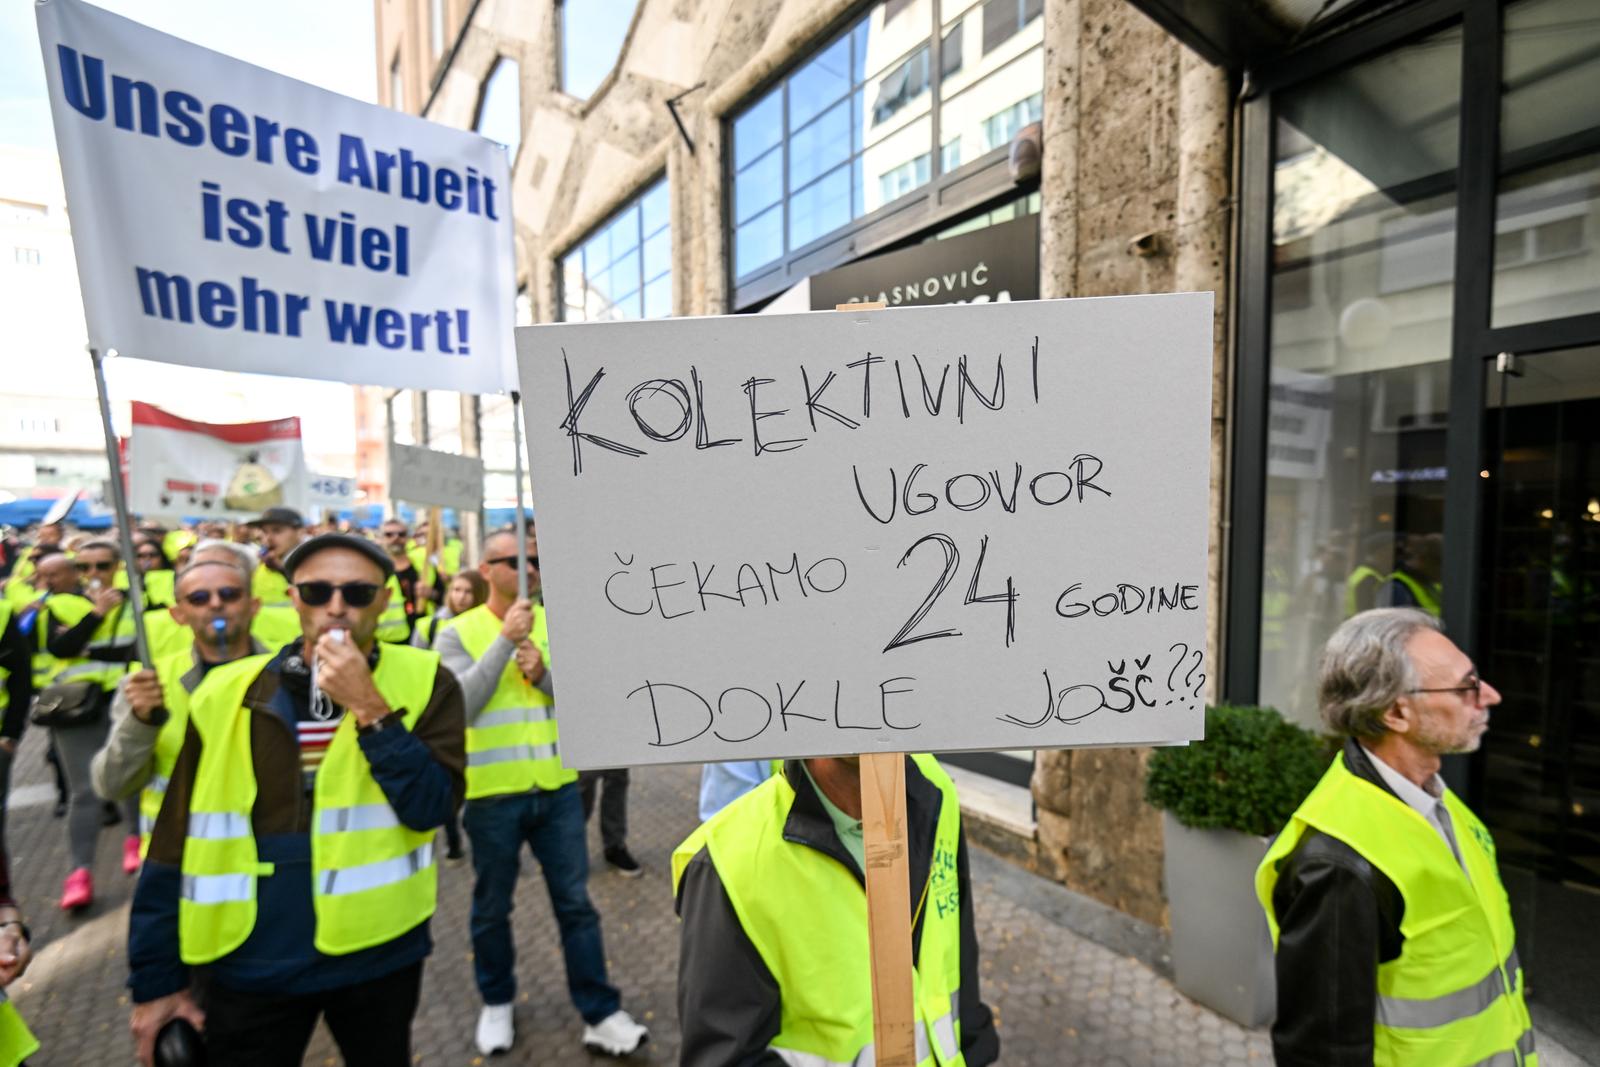 07.10.2023., Zagreb - Radnici A1 zbog malih placa i kolektivnog ugovora prosvjedovali su na Svjetski dan dostojanstvenog rada, a zahtjevaju povecanje svojih materijalnih prava te potpisivanje kolektivnog ugovora s poslodavcem s kojim pregovaraju vec godinu dana. Sindikati isticu da je minimalna neto placa zaposlenika 590 eura i u tom platnom razredu radi oko 400 radnika dok je potrosacka kosarica za jedan mjesec iznosi 950 eura. 

Okupljanje je pocelo na Zrinjevcu od kuda su se okupljeni uputili prema jednom prodajnom mjestu A1.

 Photo: Marko Lukunic/PIXSELL